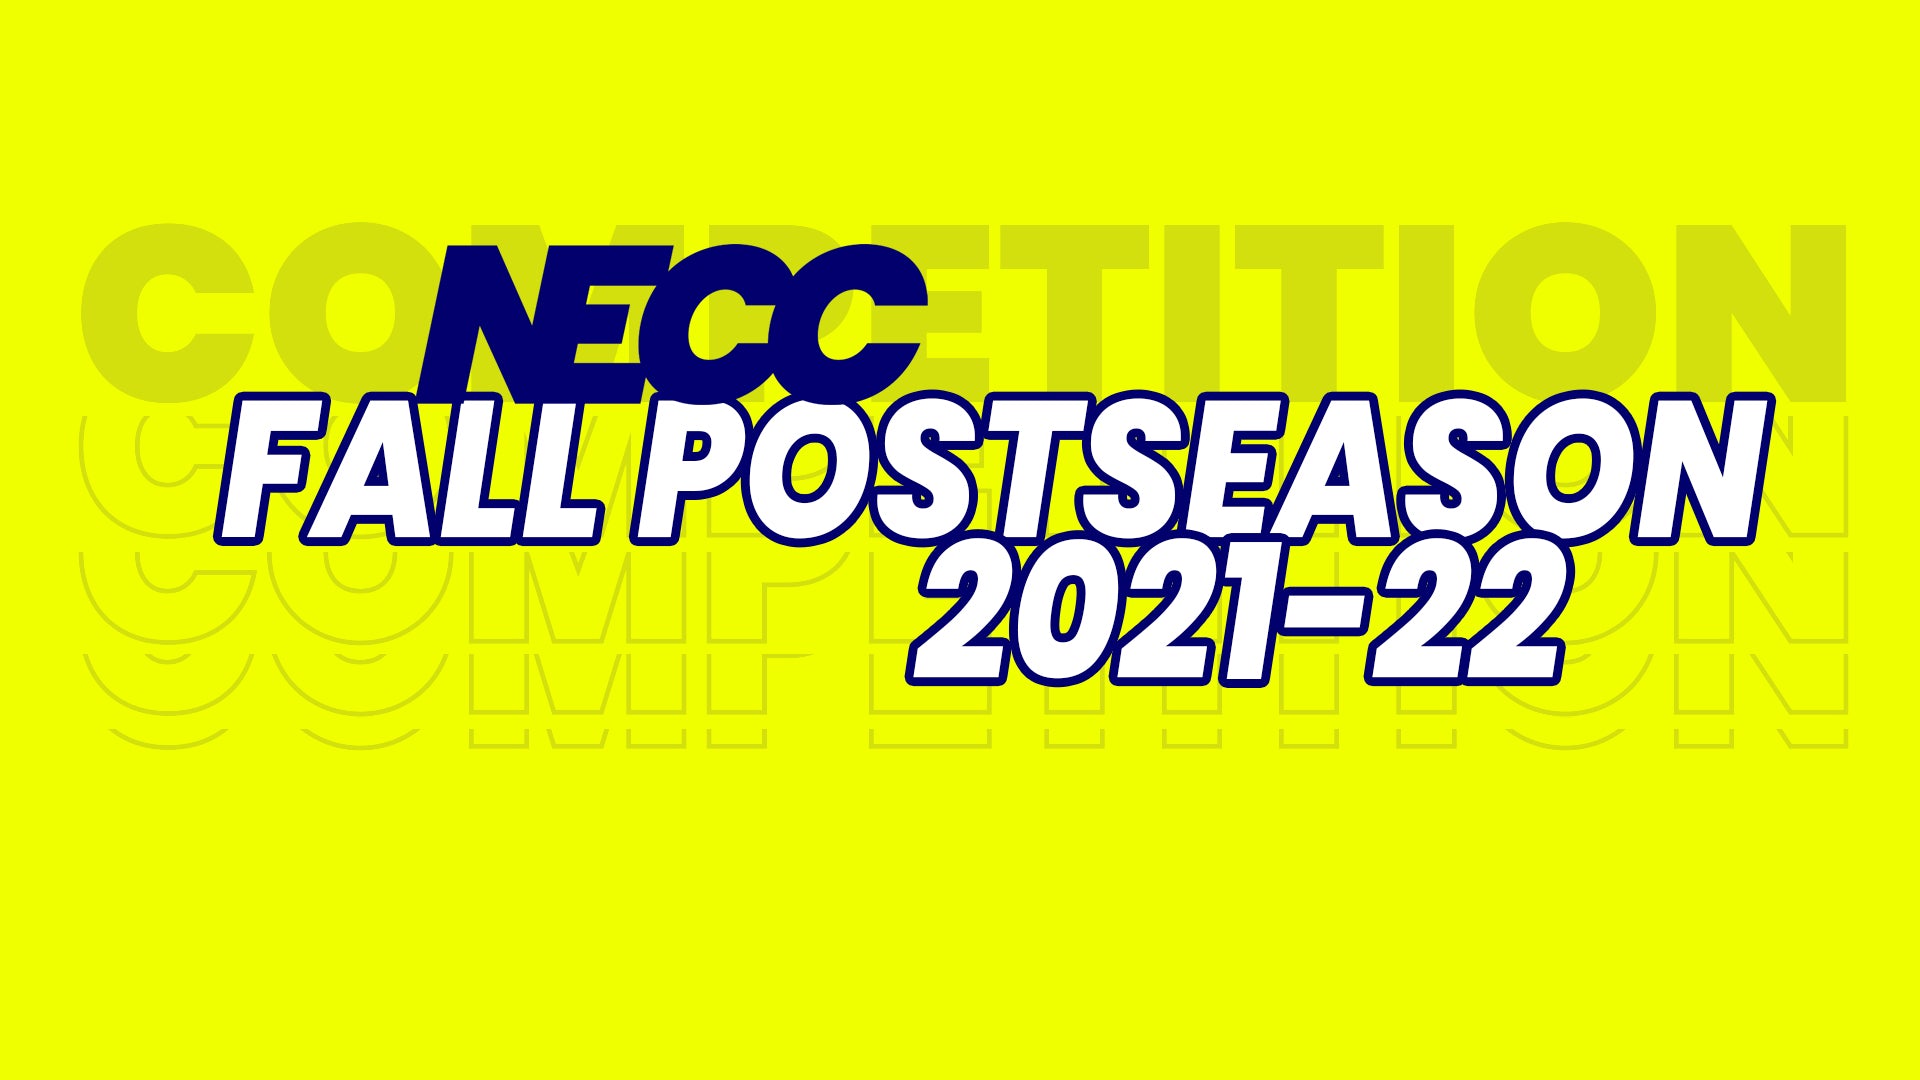 NECC Announces Details about it's Fall 2021 Postseason